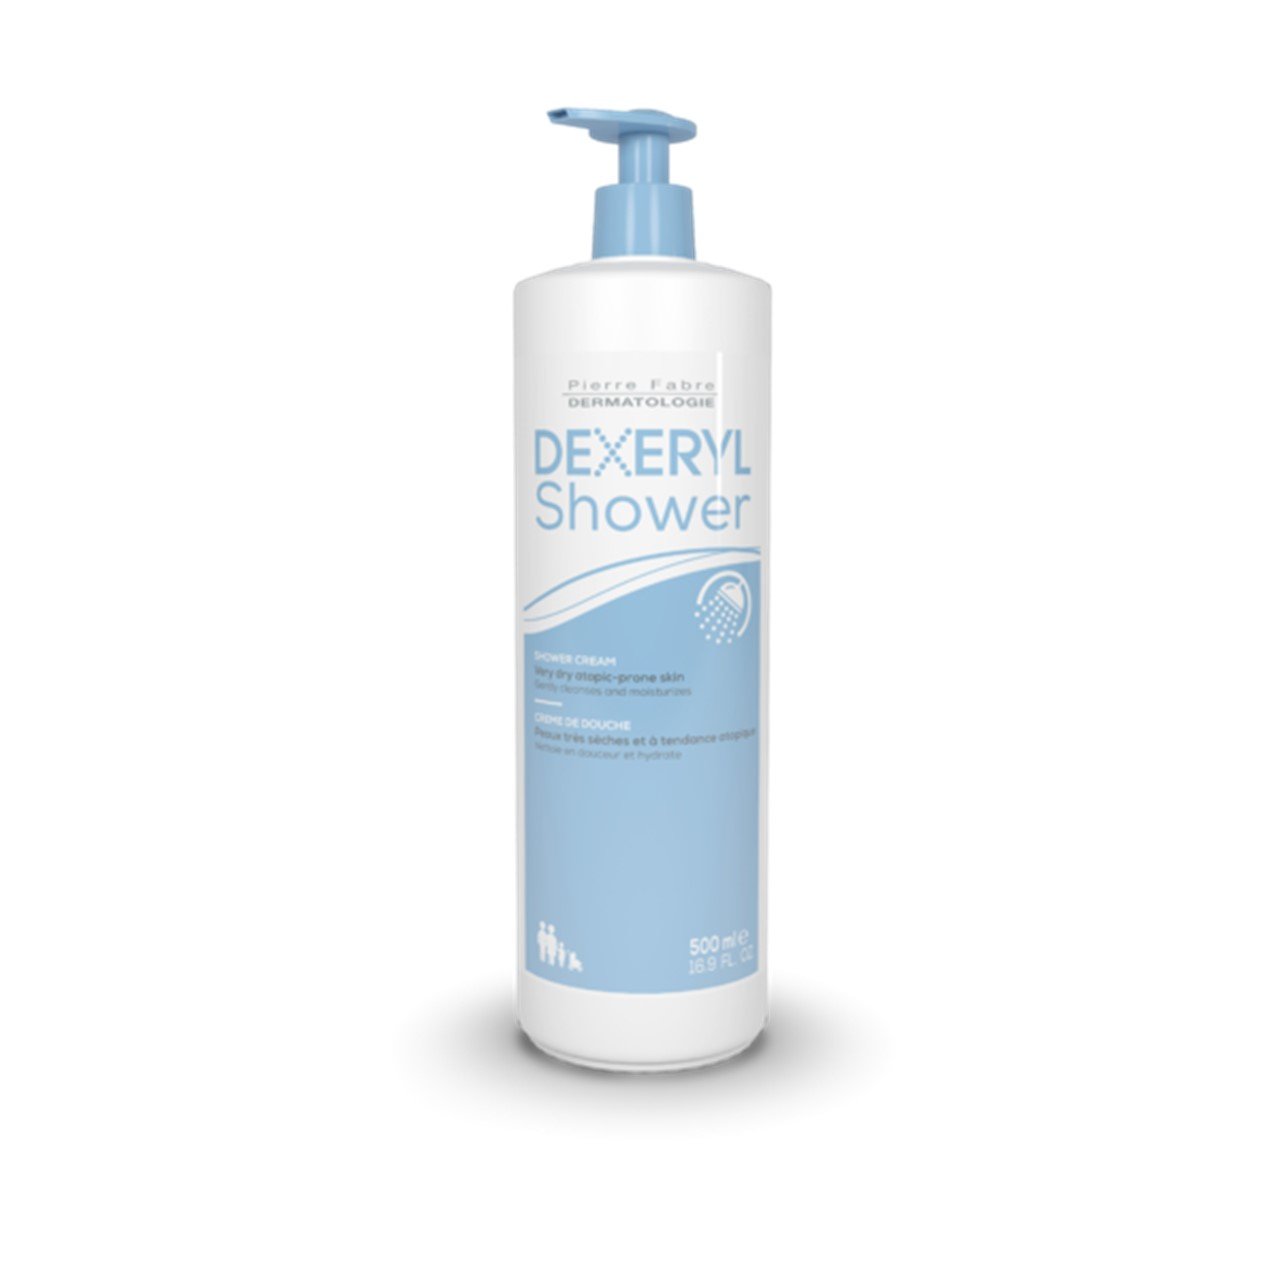 Pierre Fabre Dermatologie Dexeryl Shower Cleansing Cream 500ml (16.91fl oz)